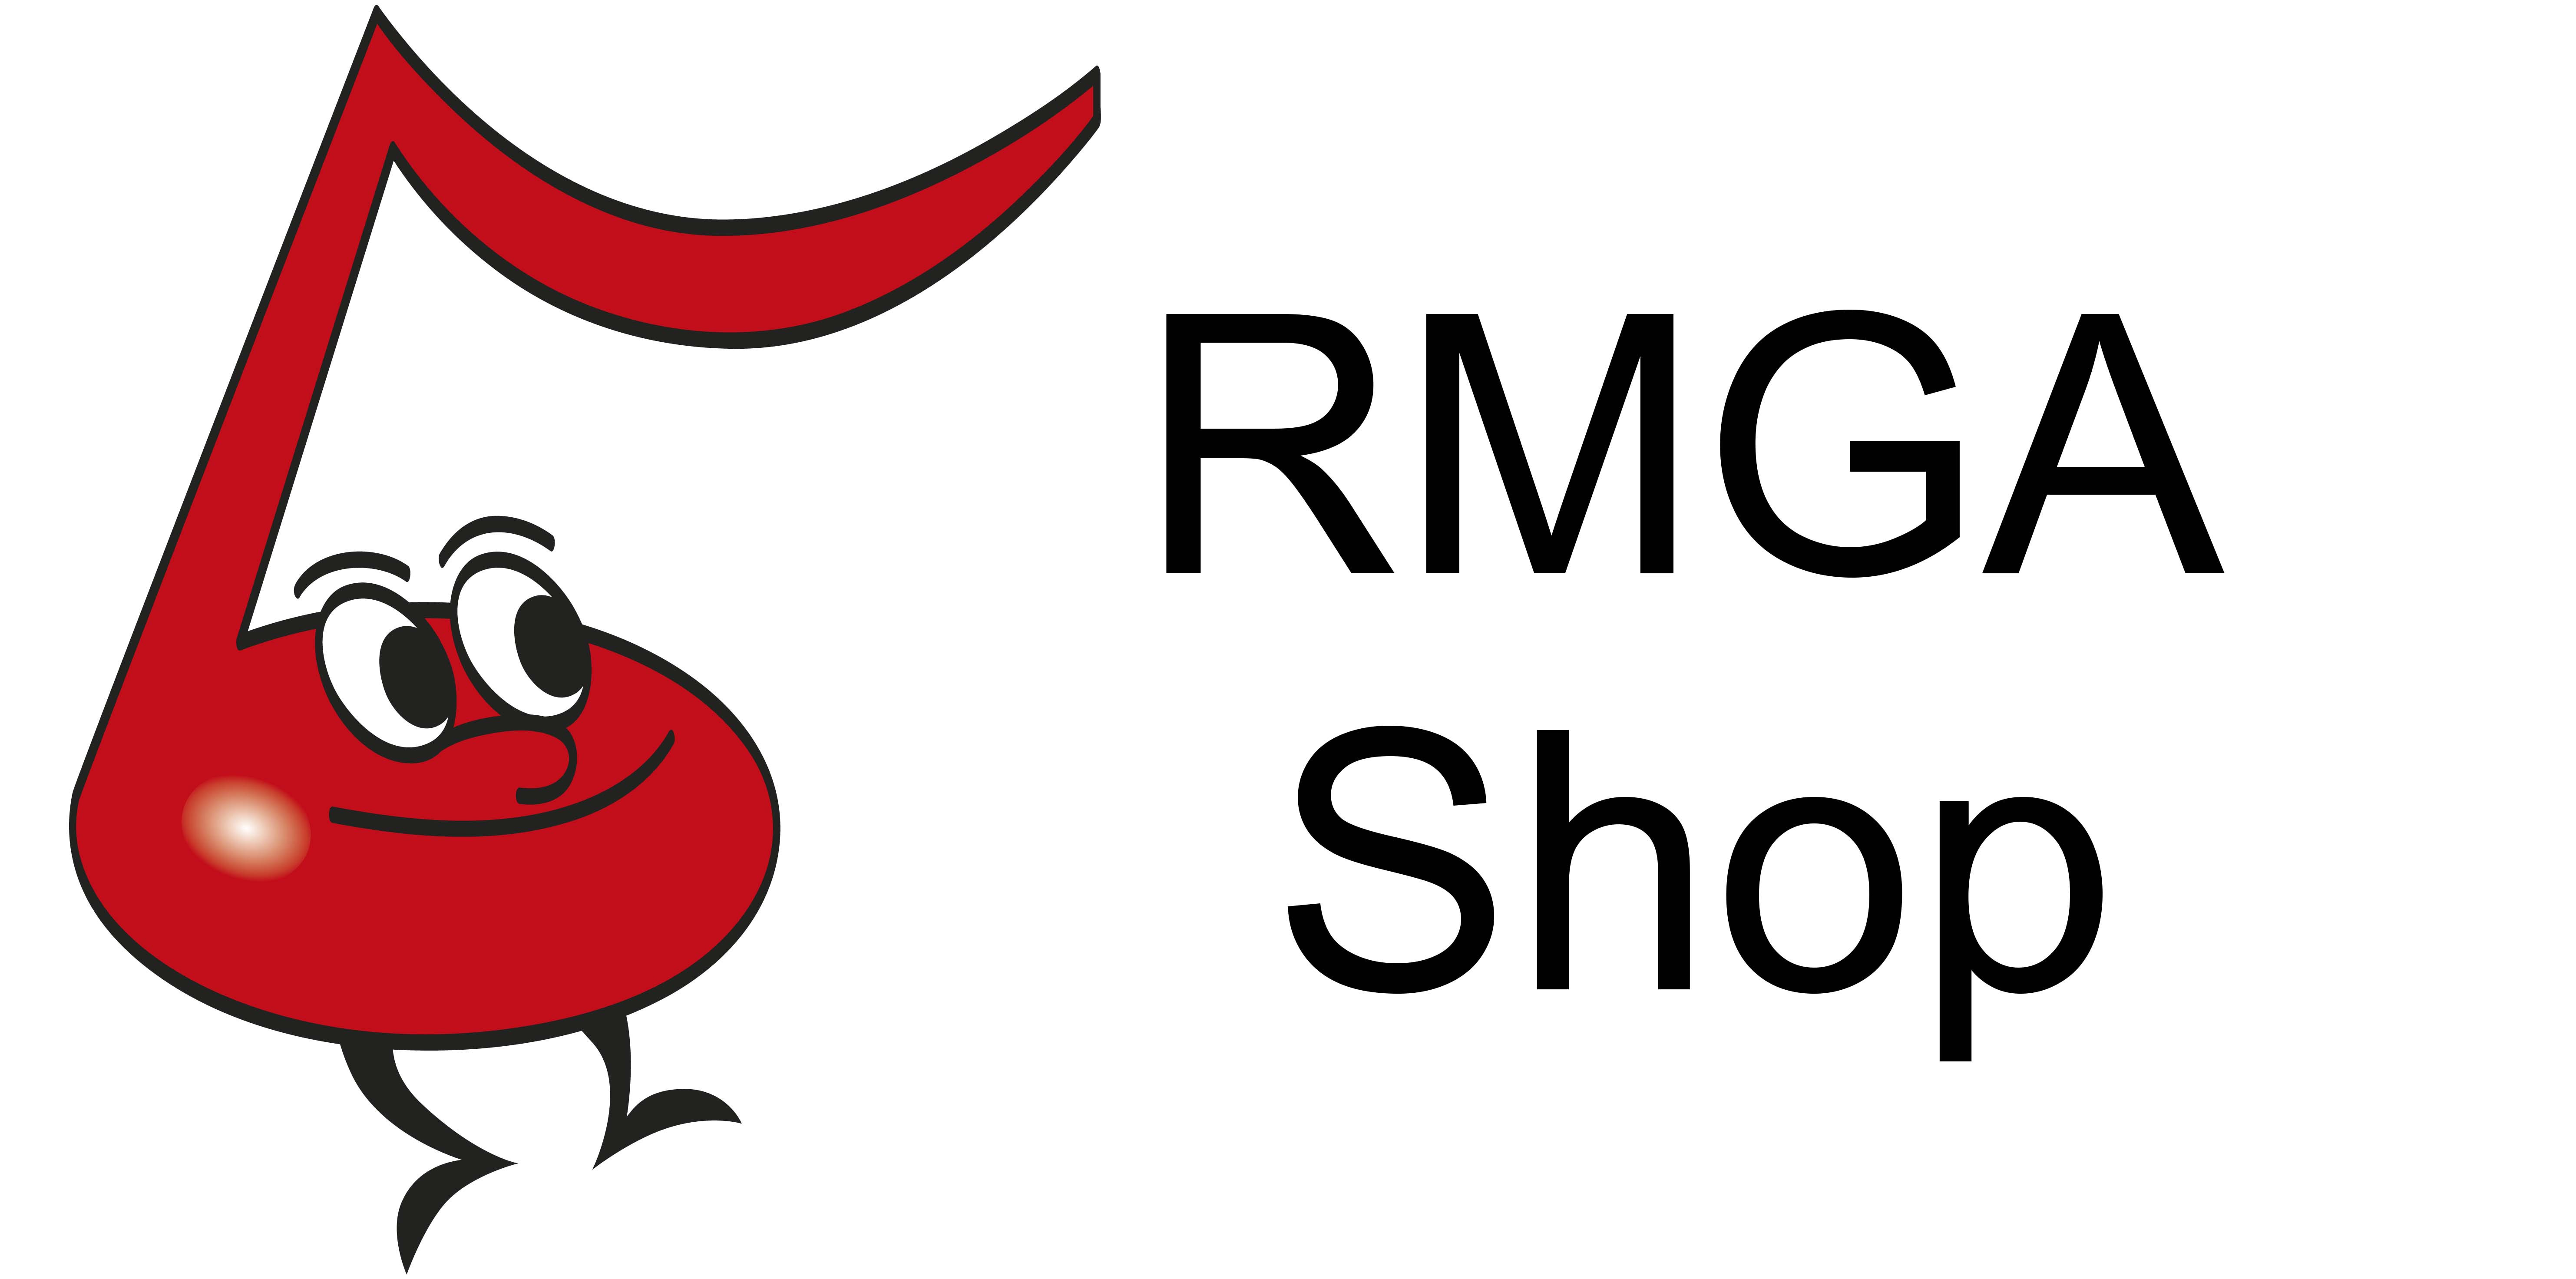 RMGA Shop